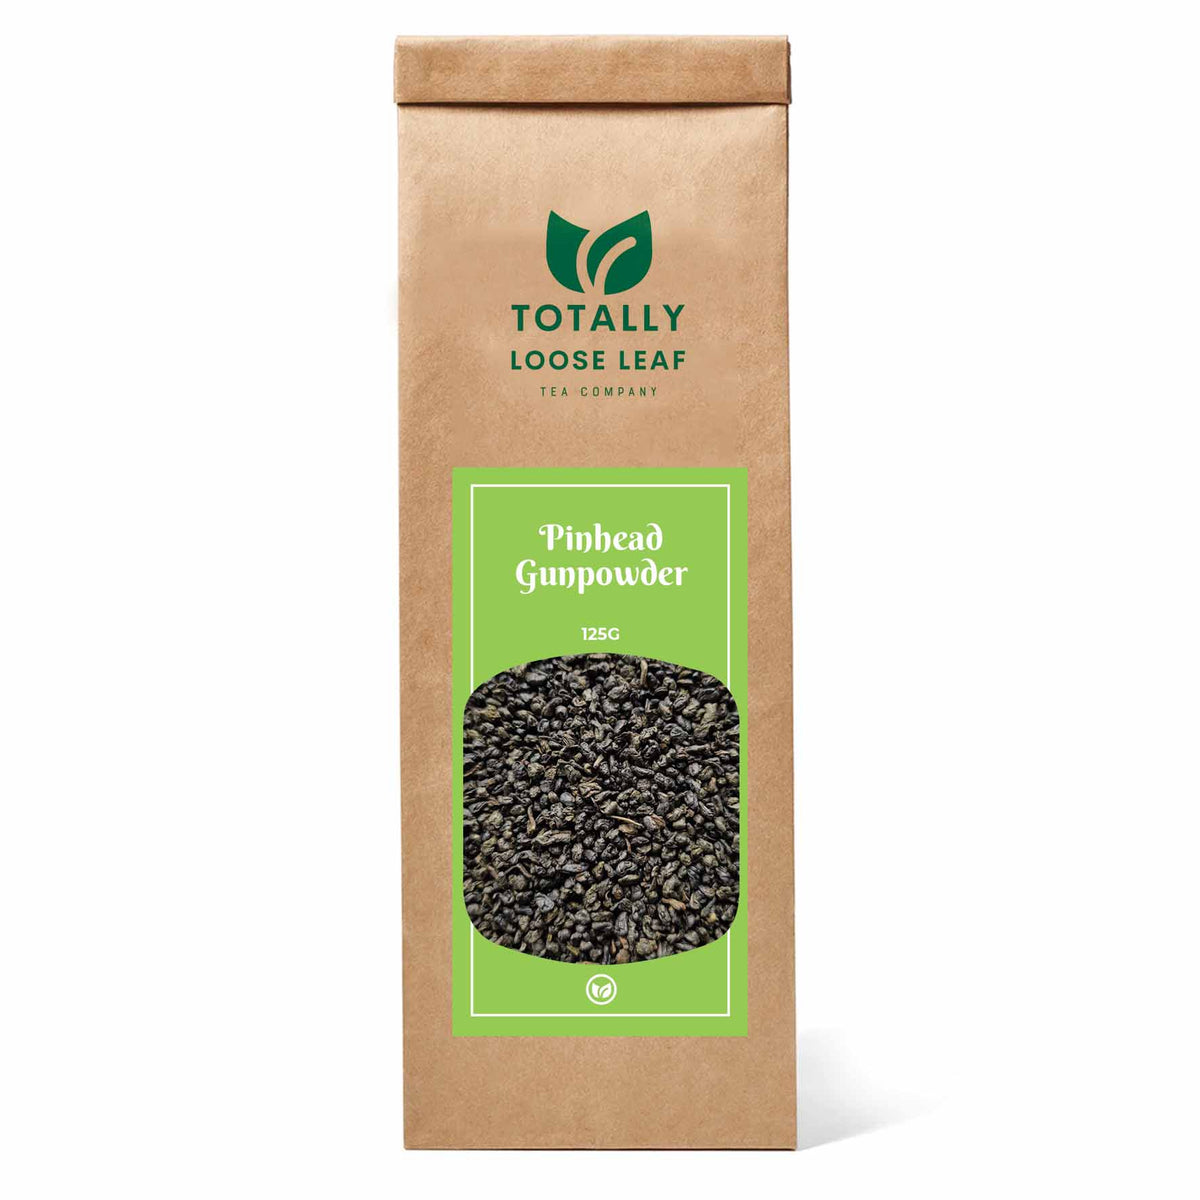 Pinhead Gunpowder Green Loose Leaf Tea - one pouch